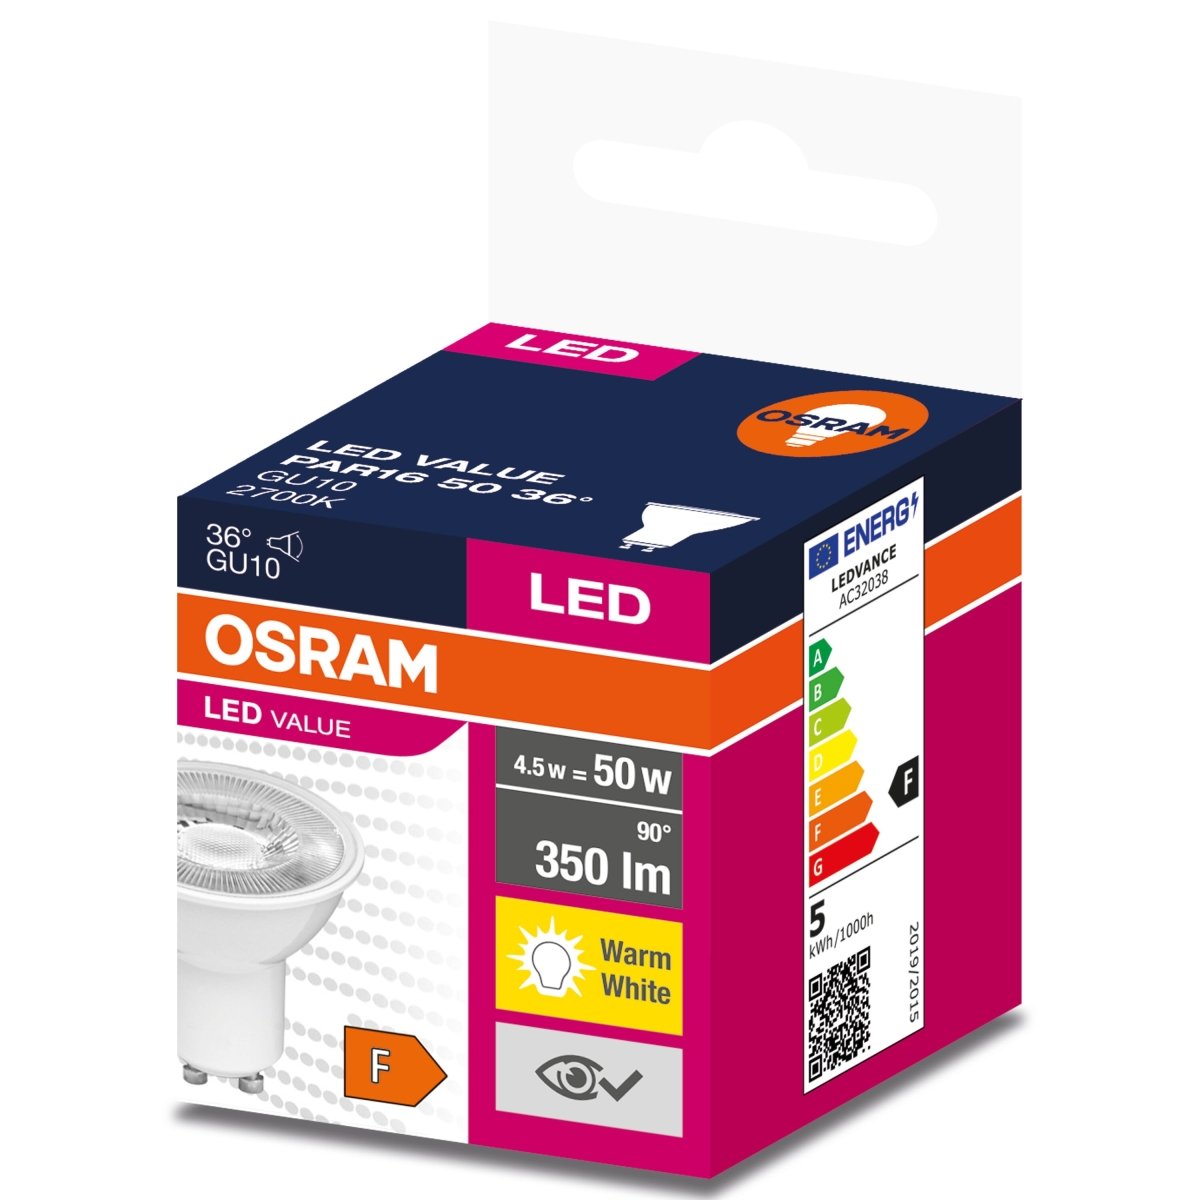 Żarówka LED GU10 4,5W LED VALUE OSRAM, odpowiednik 50W, 36 st., barwa ciepła, 1 szt. - eshop LEDVANCE 4058075198586